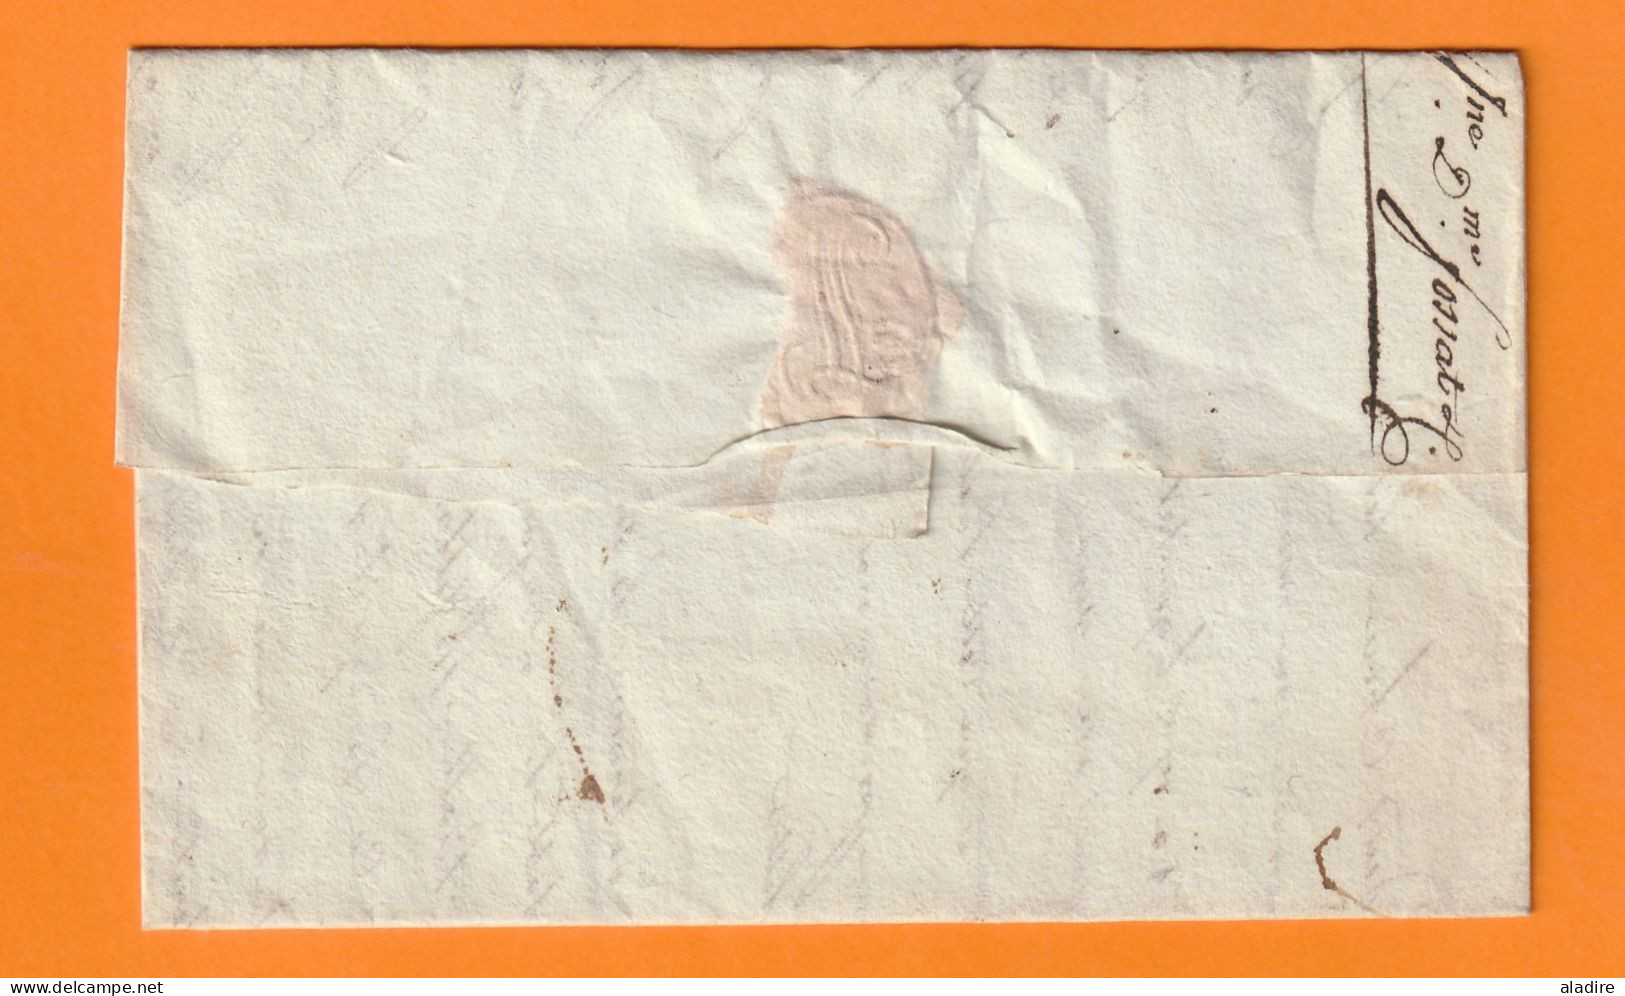 1813 - Marque Postale 115 MOISSAC Sur Lettre Pliée Vers AGDE - Taxe 5 - Règne De Napoléon 1er - 1801-1848: Precursors XIX